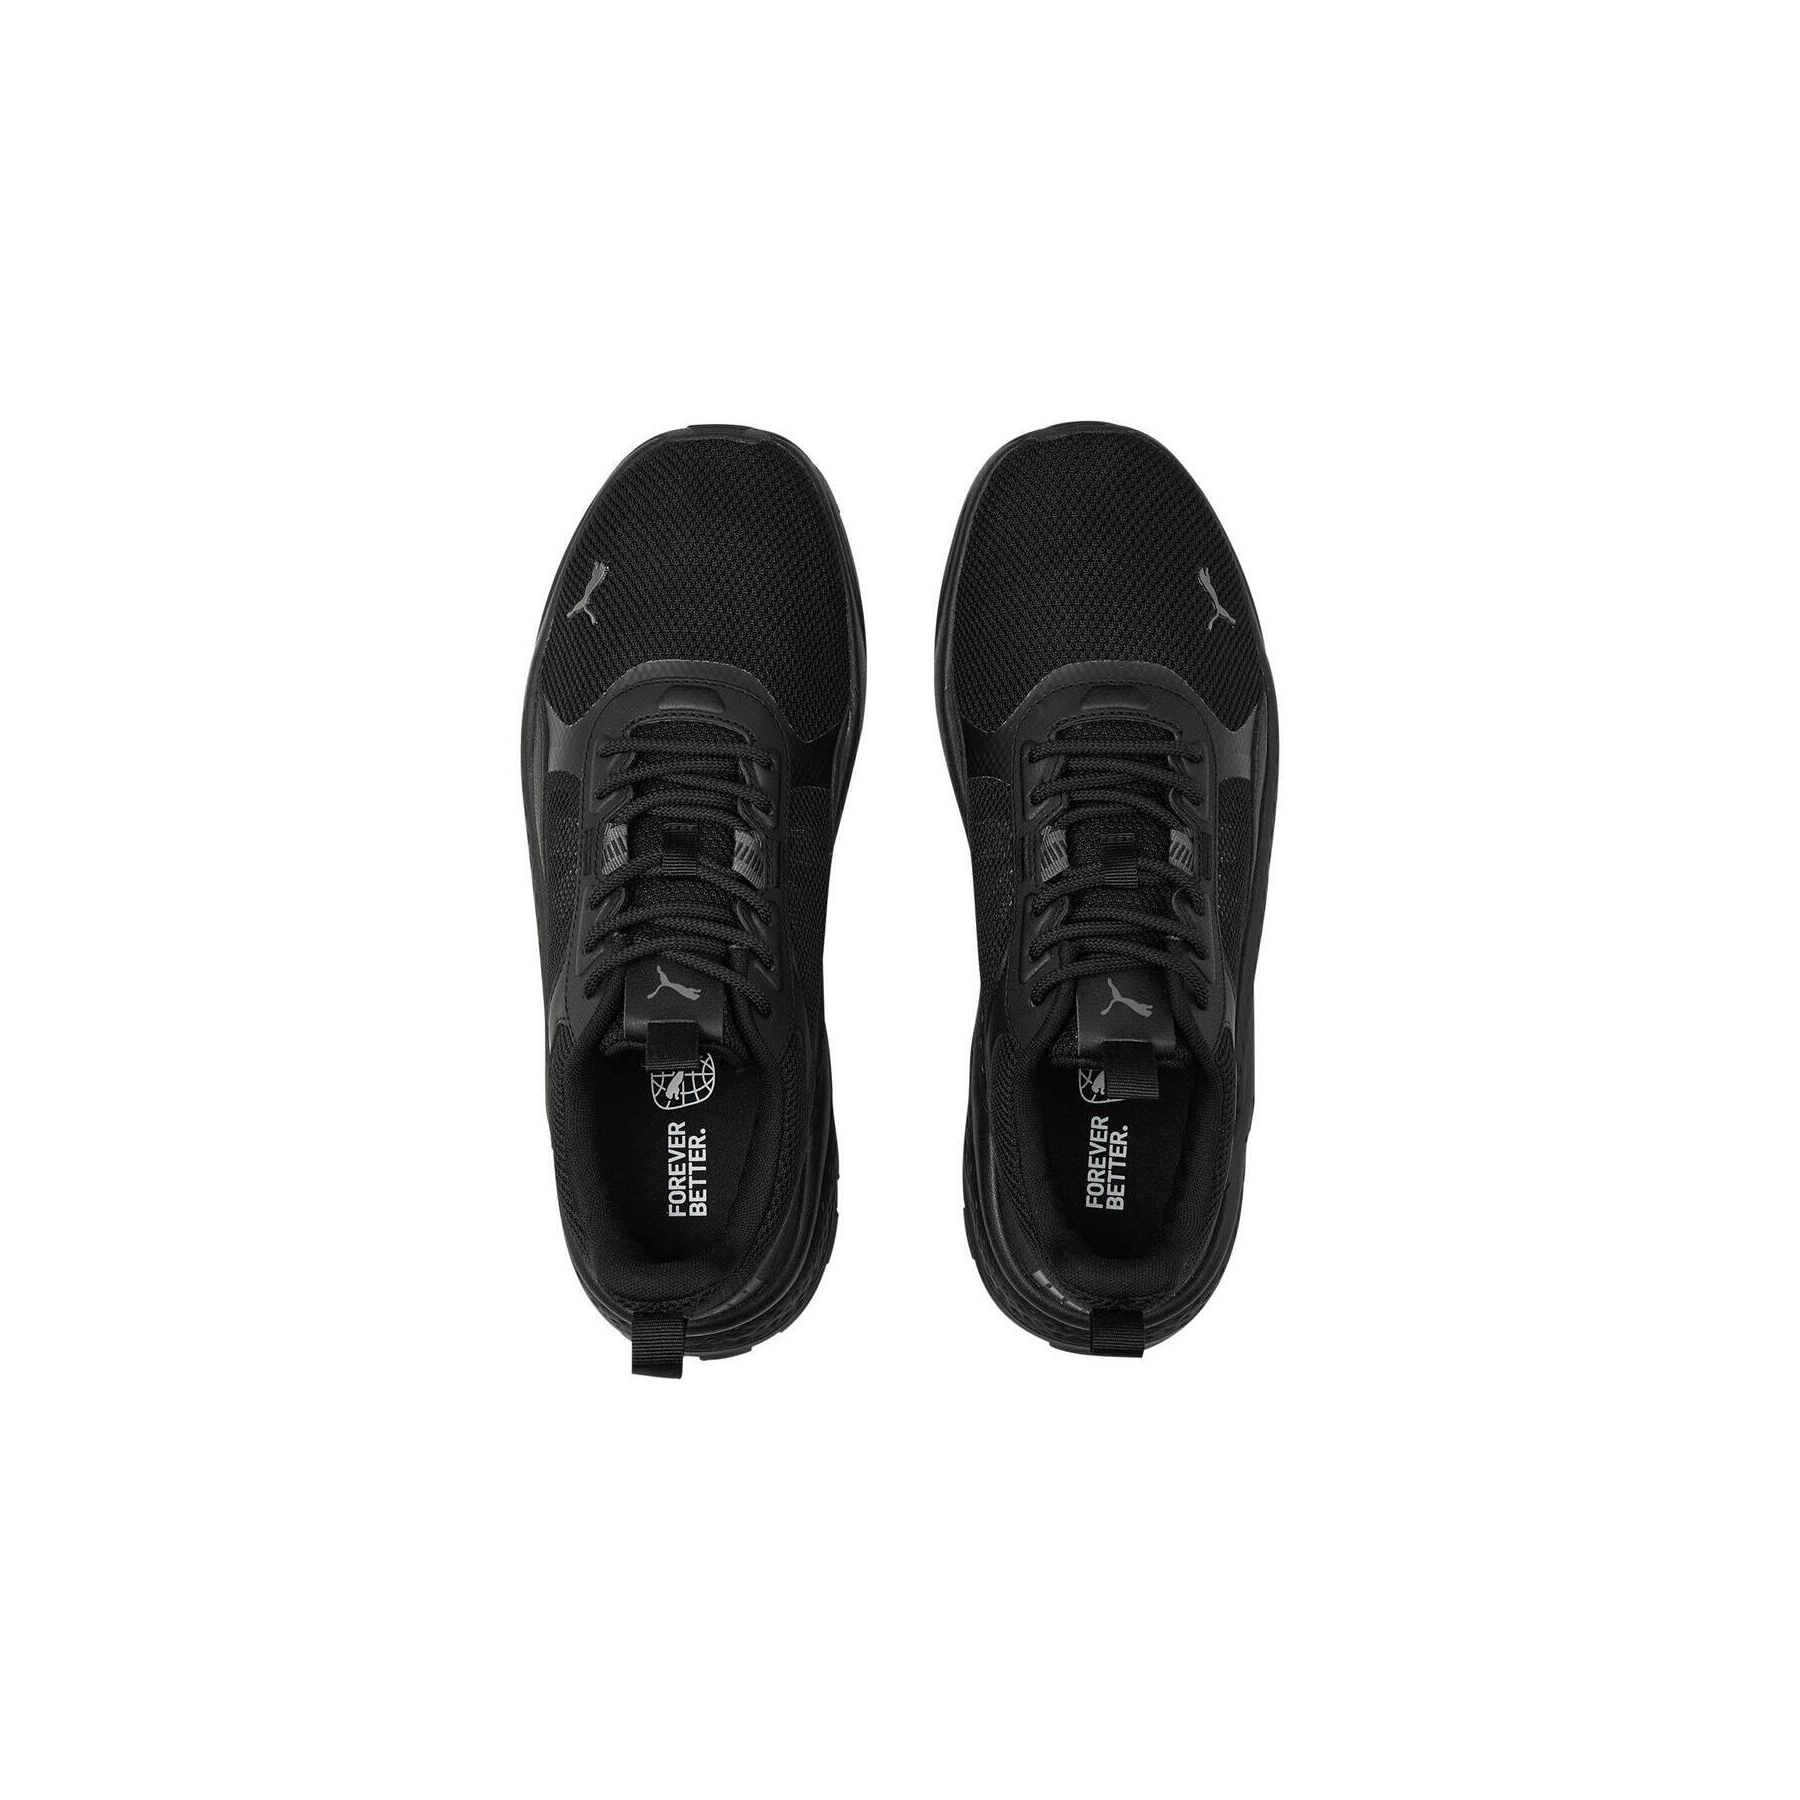 Puma Anzarun 2.0 Erkek Siyah Koşu Ayakkabısı (389213-01)